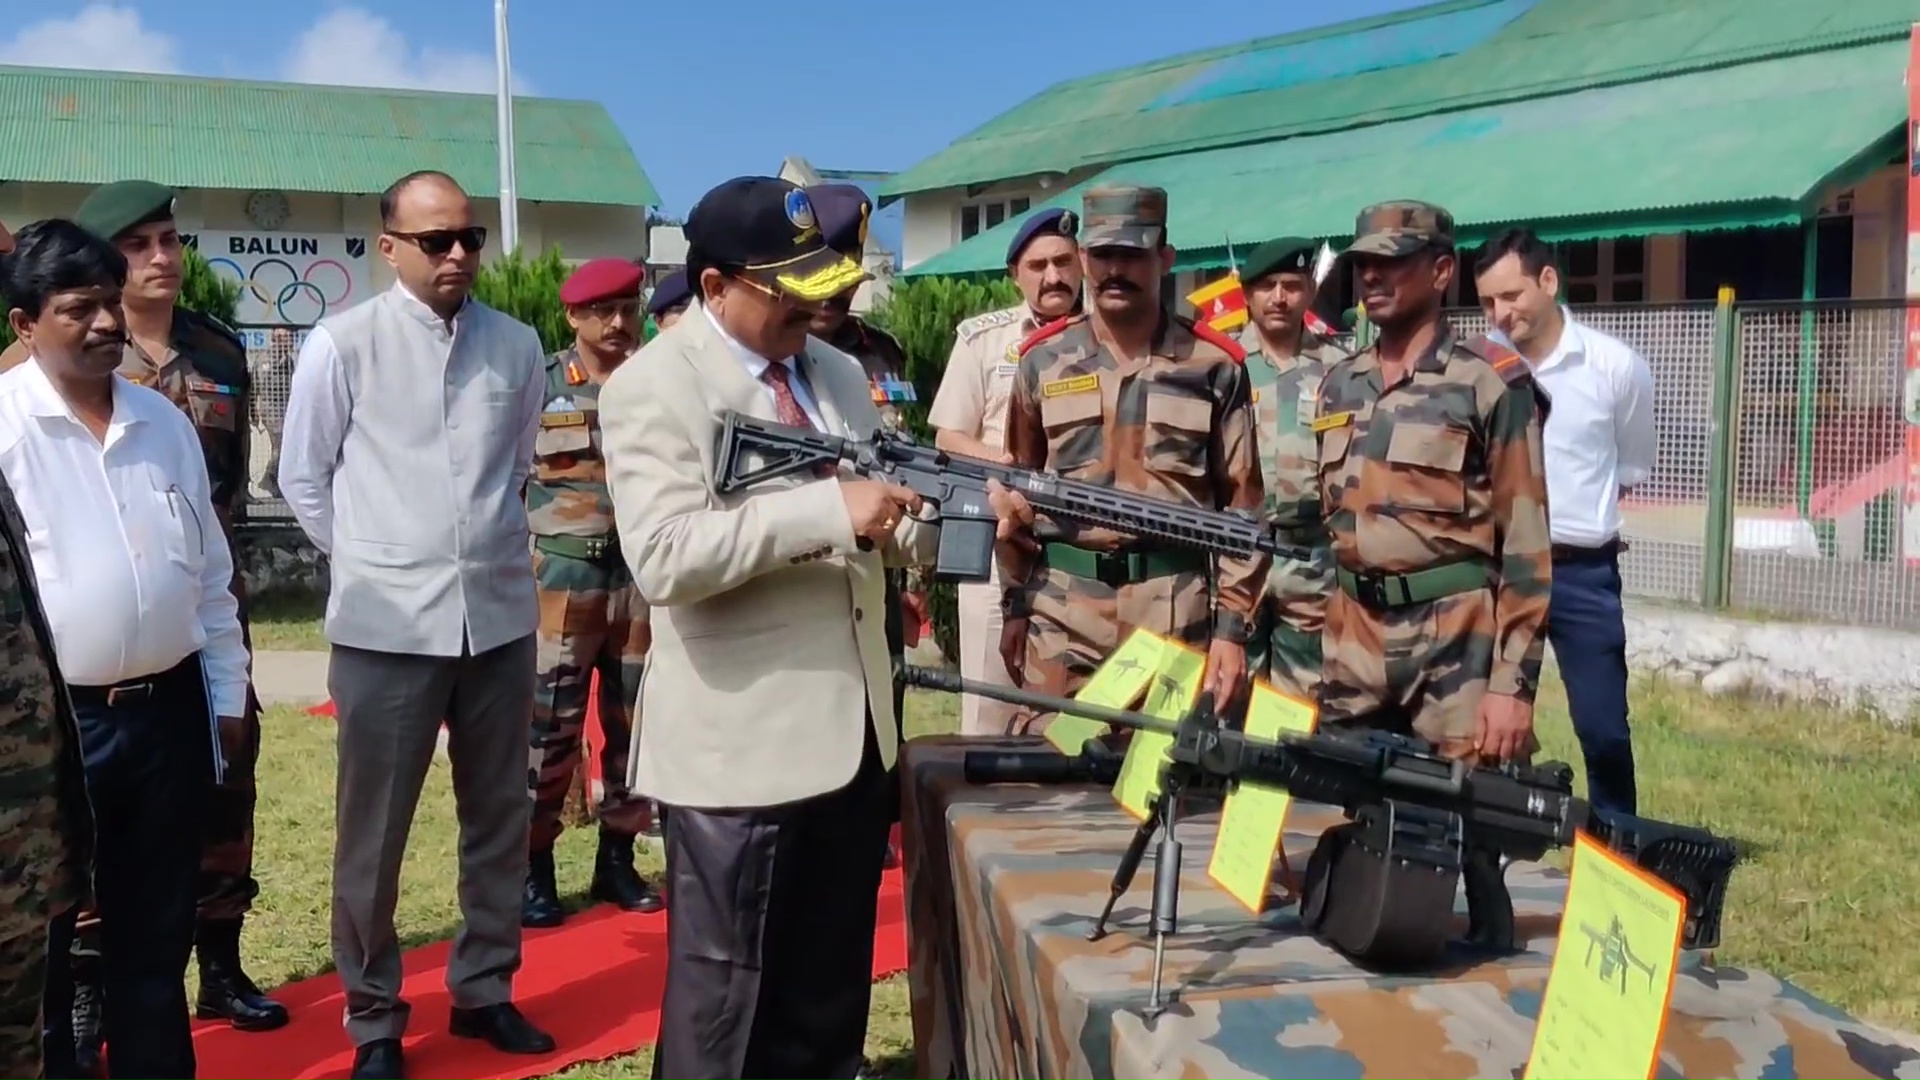 डल्हौजी मिलिट्री स्टेशन पहुंचे रक्षा एवं प्रर्यटन मंत्री अजय भट्ट, नए हथियारों की ली जानकारी